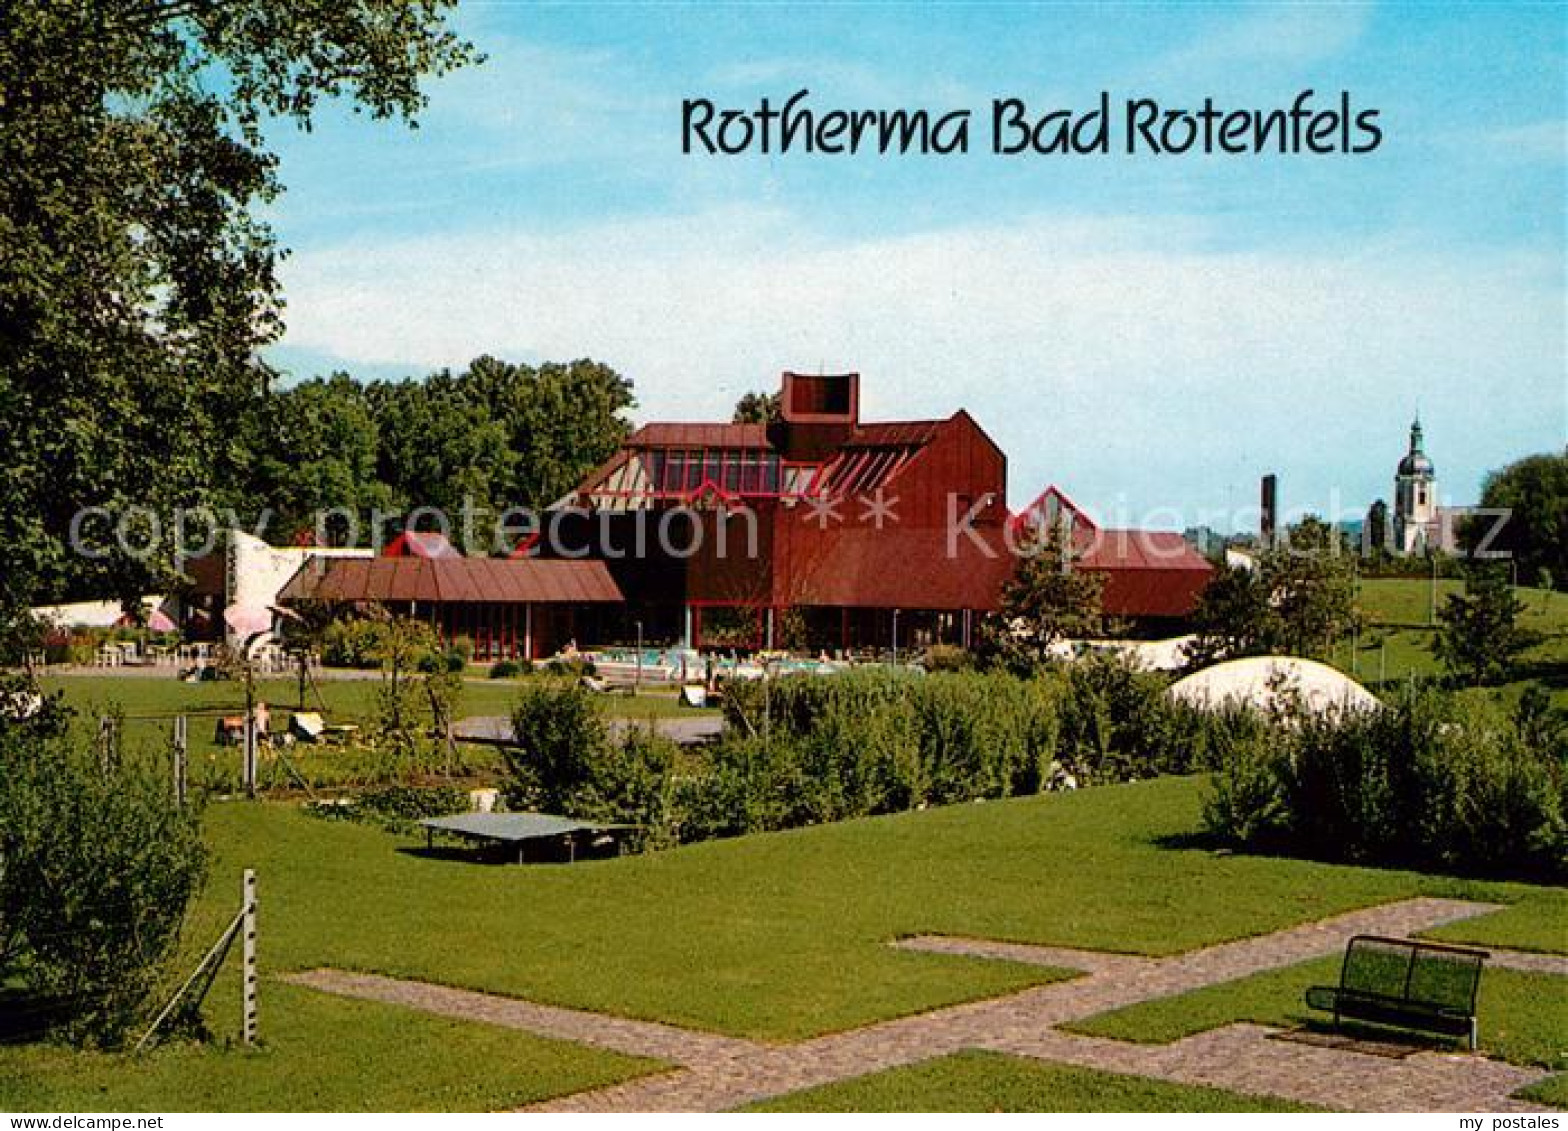 73109220 Bad Rotenfels Rotherma Bad Kurpark Bad Rotenfels - Gaggenau